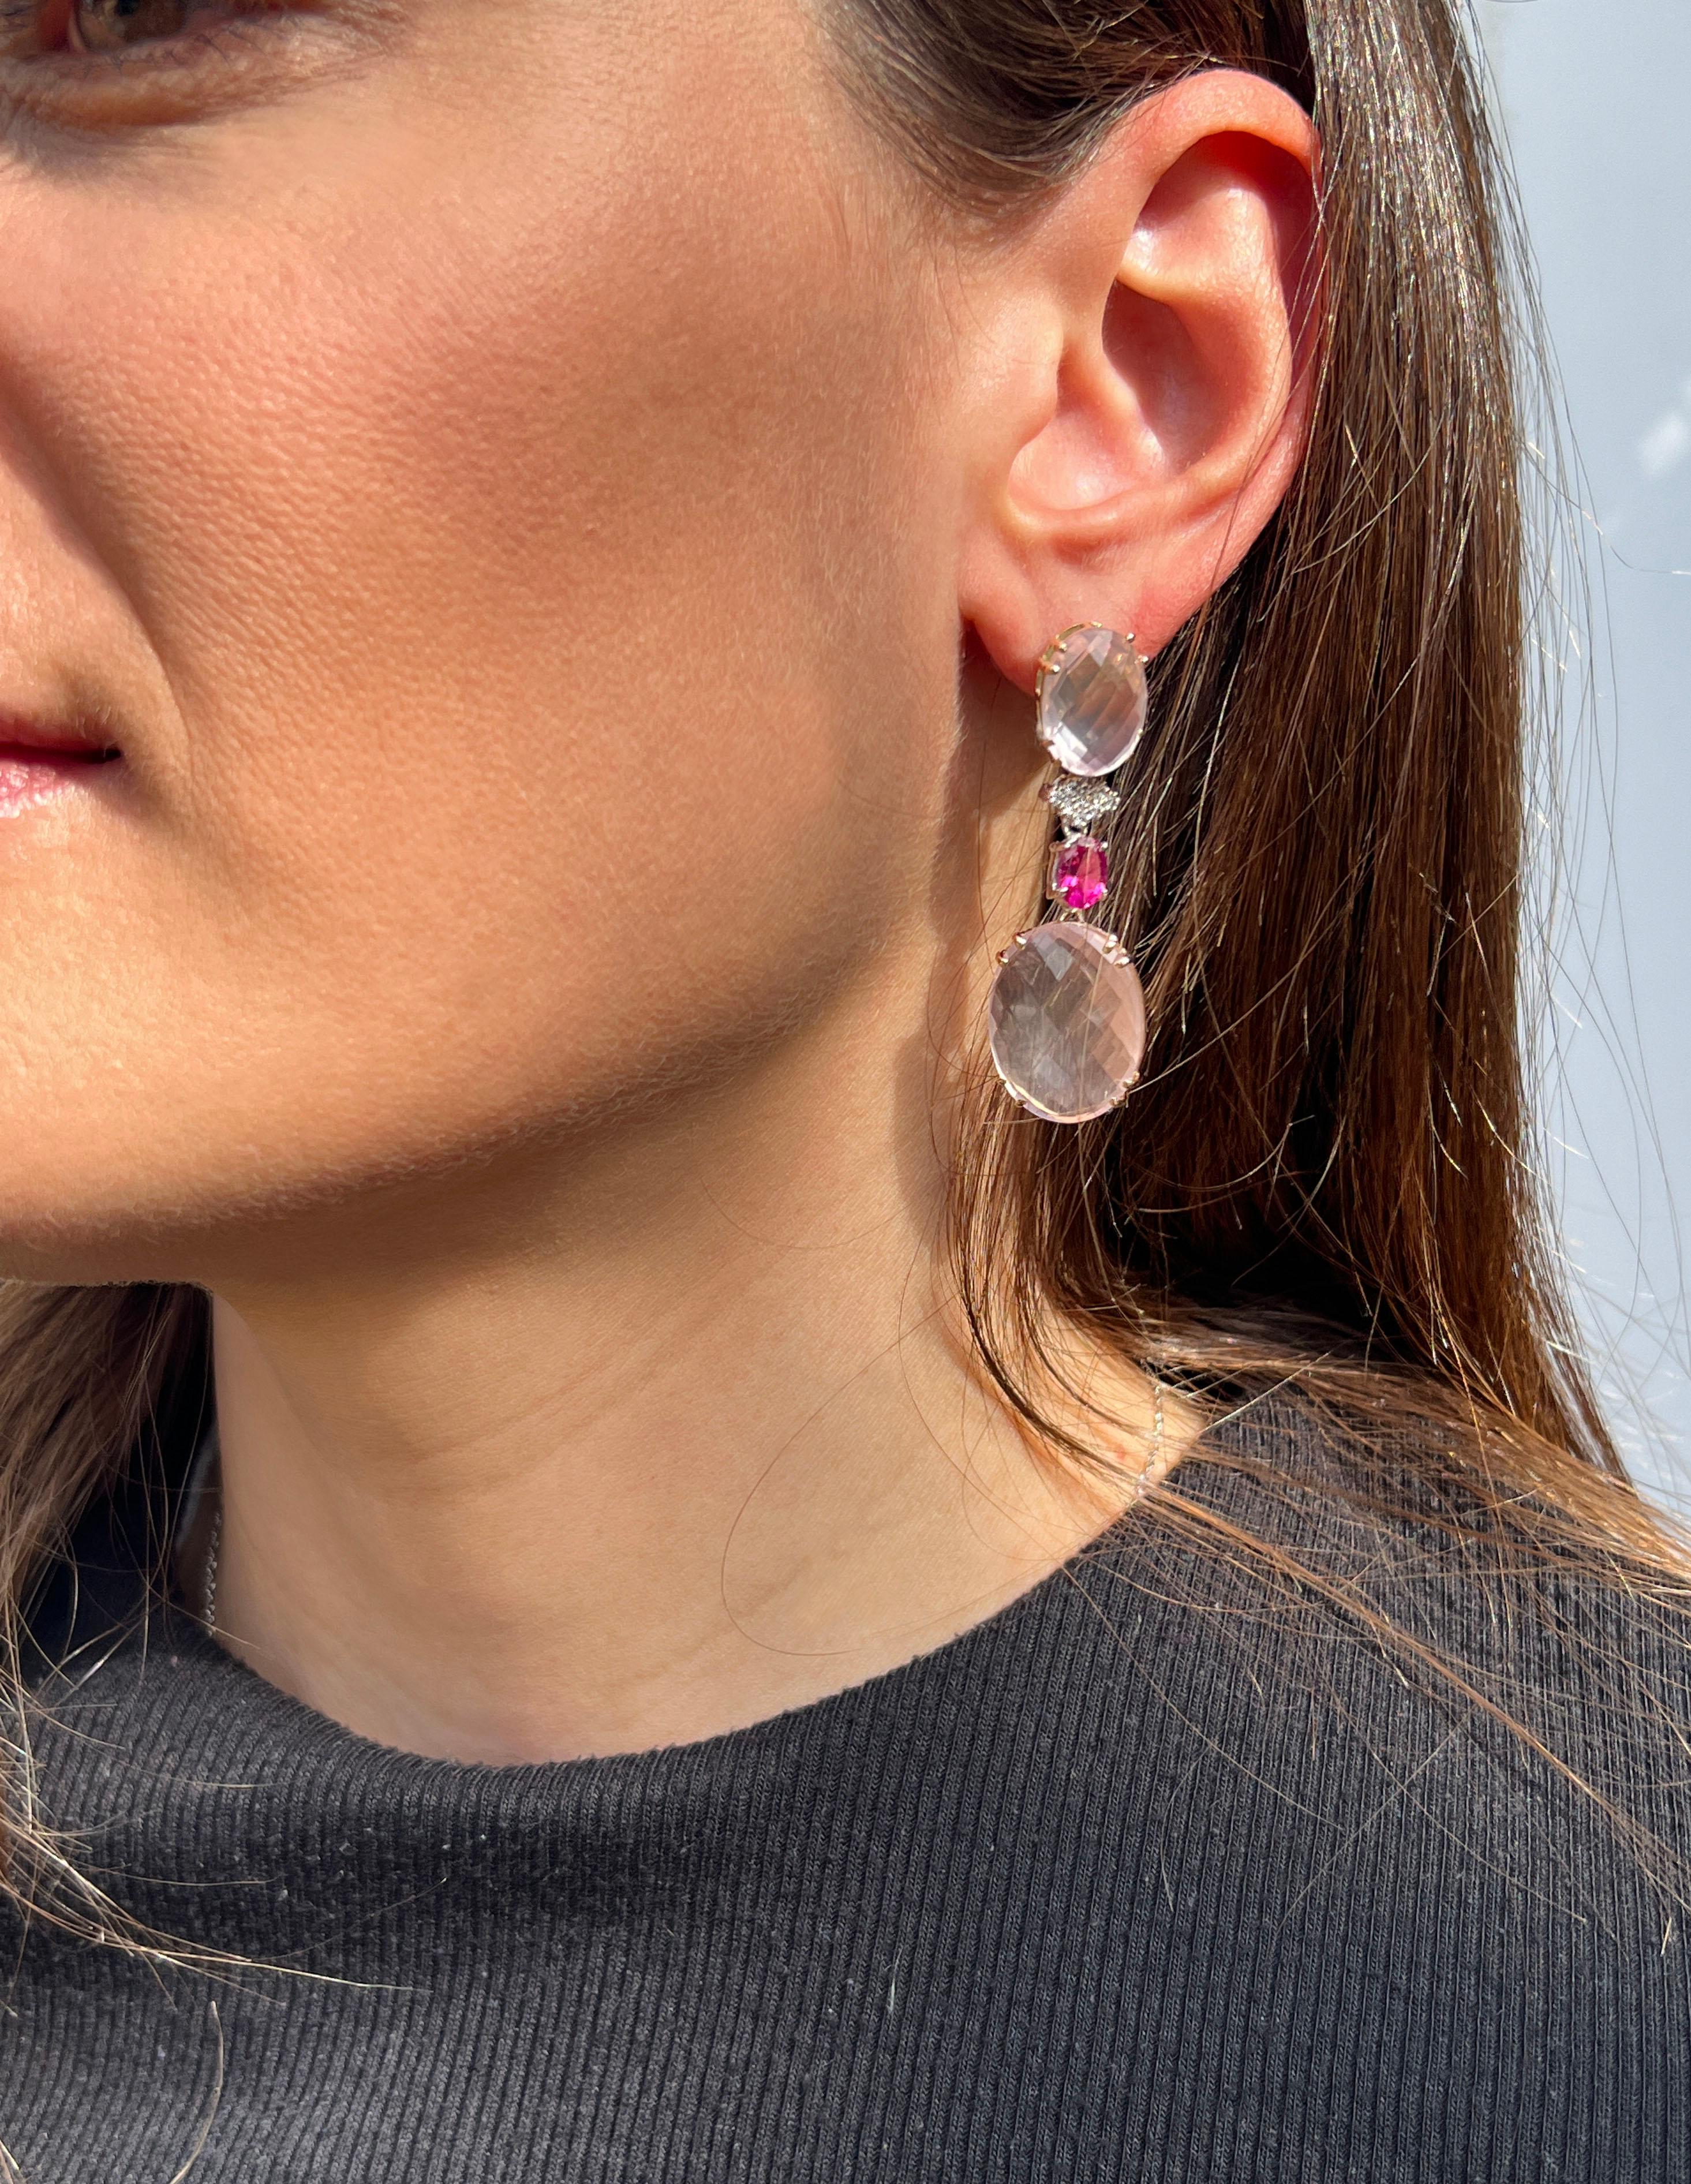 Moderne Ohrringe in zarten Farben, zeitlose Schönheit mit moderner Eleganz. Das schlichte Design und die Kombination aus zarten und leuchtenden Farben machen diese Ohrringe zu einem einzigartigen Alltagsbegleiter für die trendige und moderne Frau.